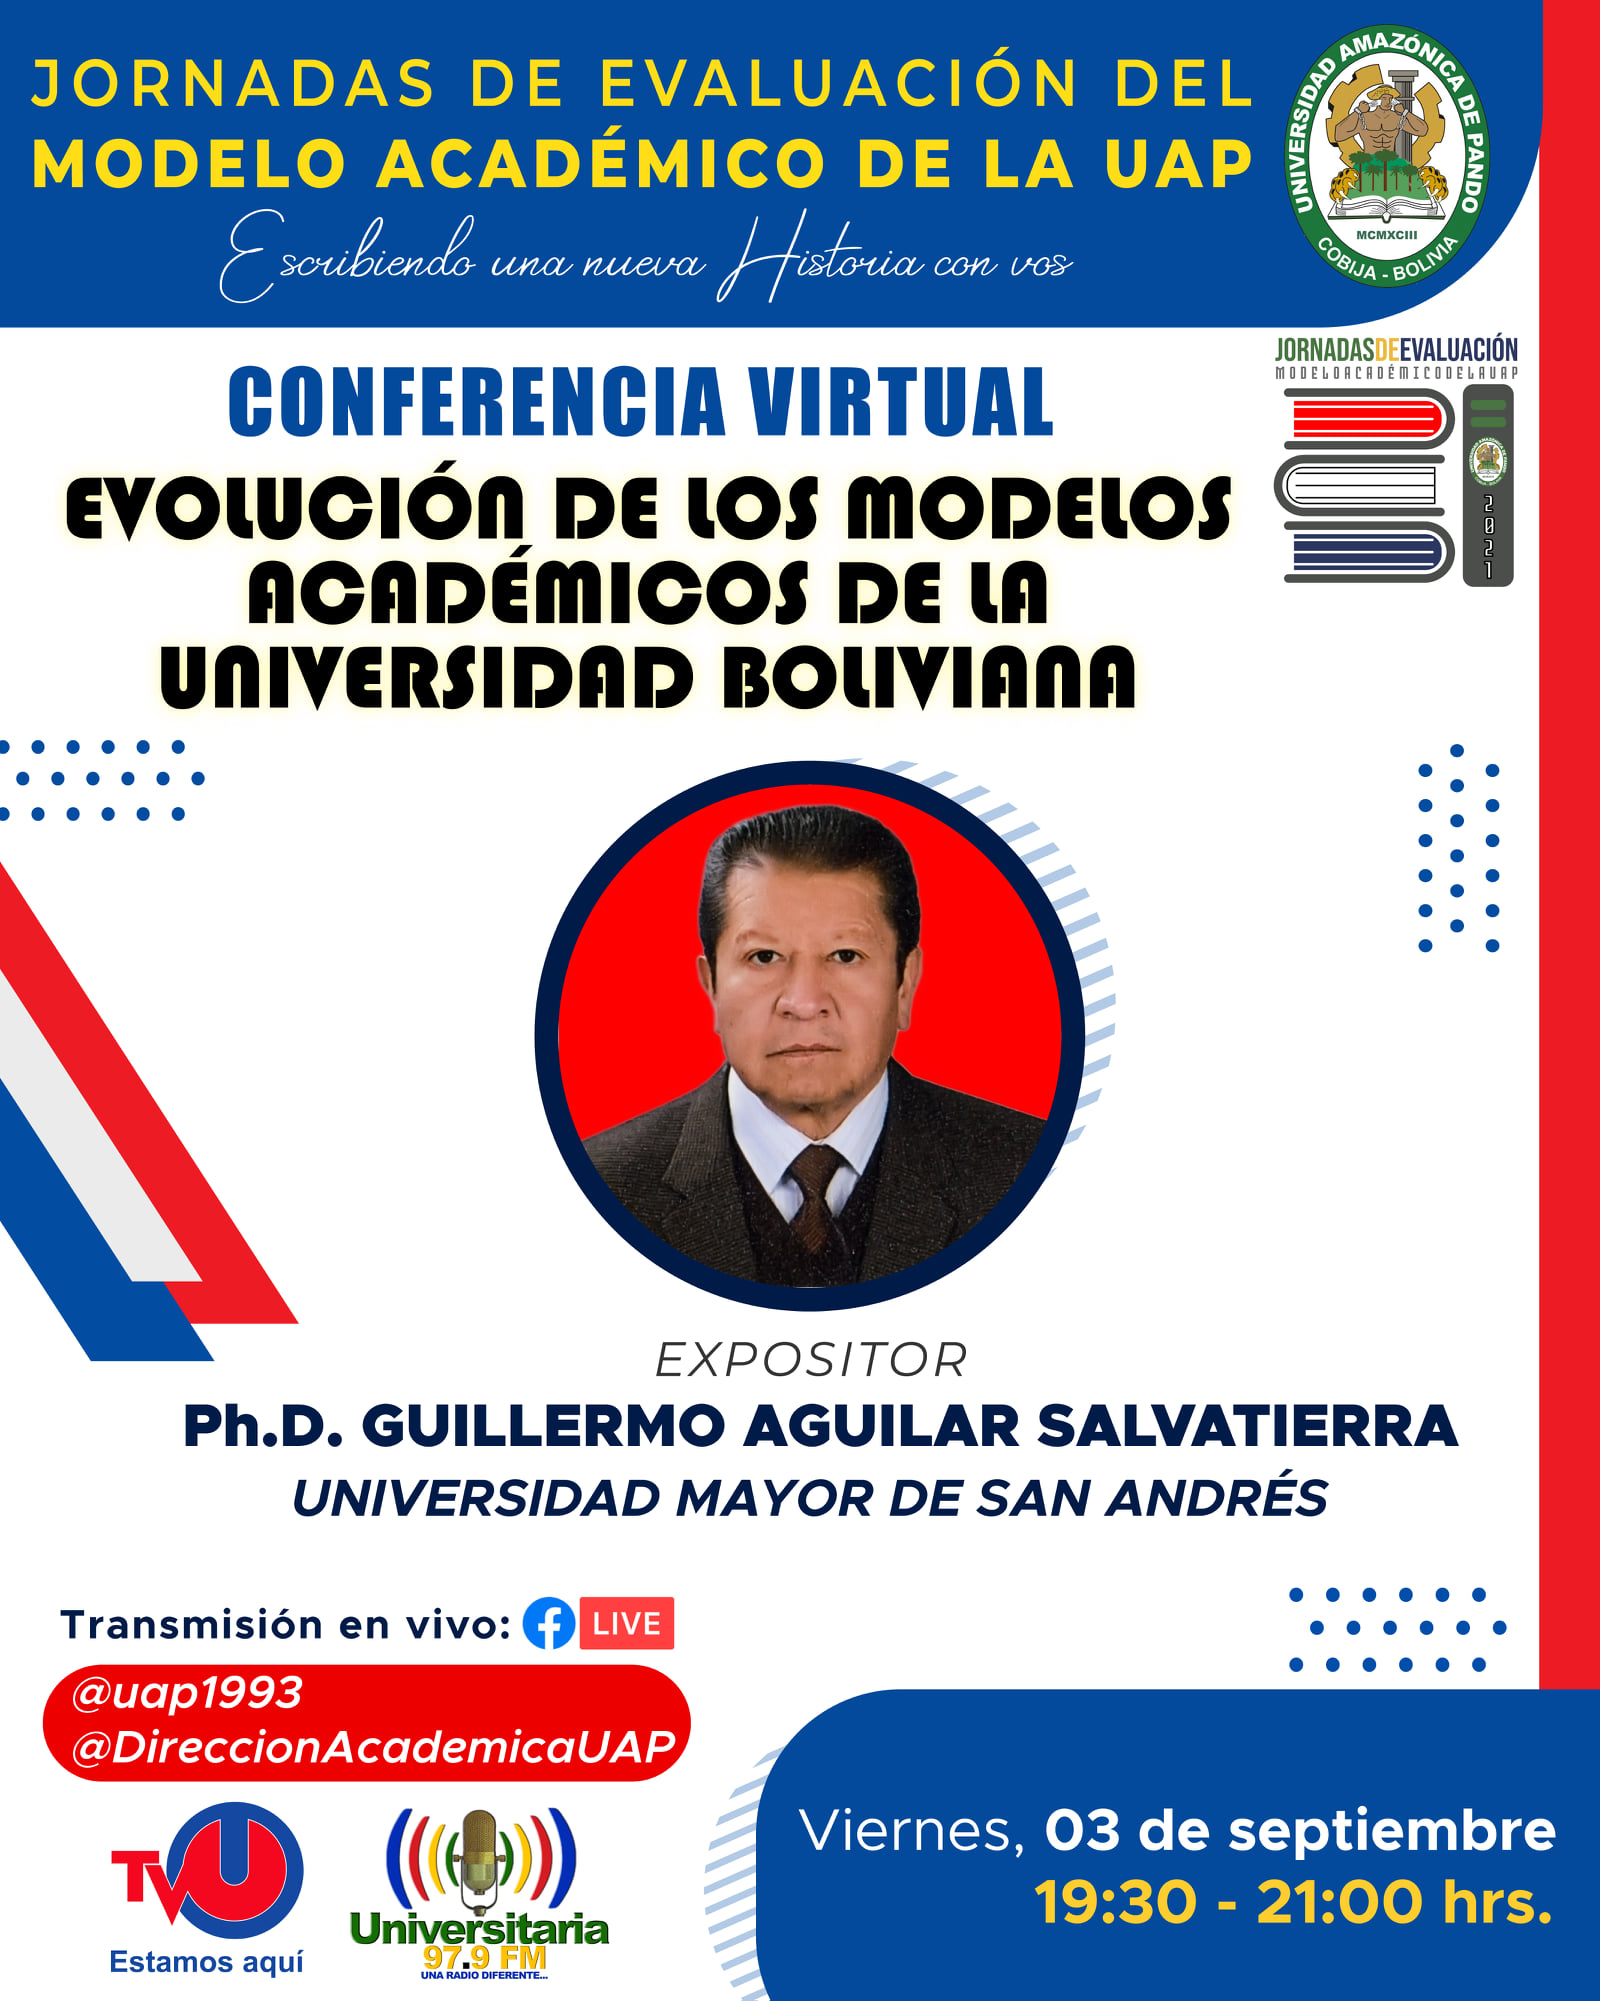 CONFERENCIA VIRTUAL: "EVOLUCIÓN DE LOS MODELOS ACADÉMICOS DE LA UNIVERSIDAD BOLIVIANA"